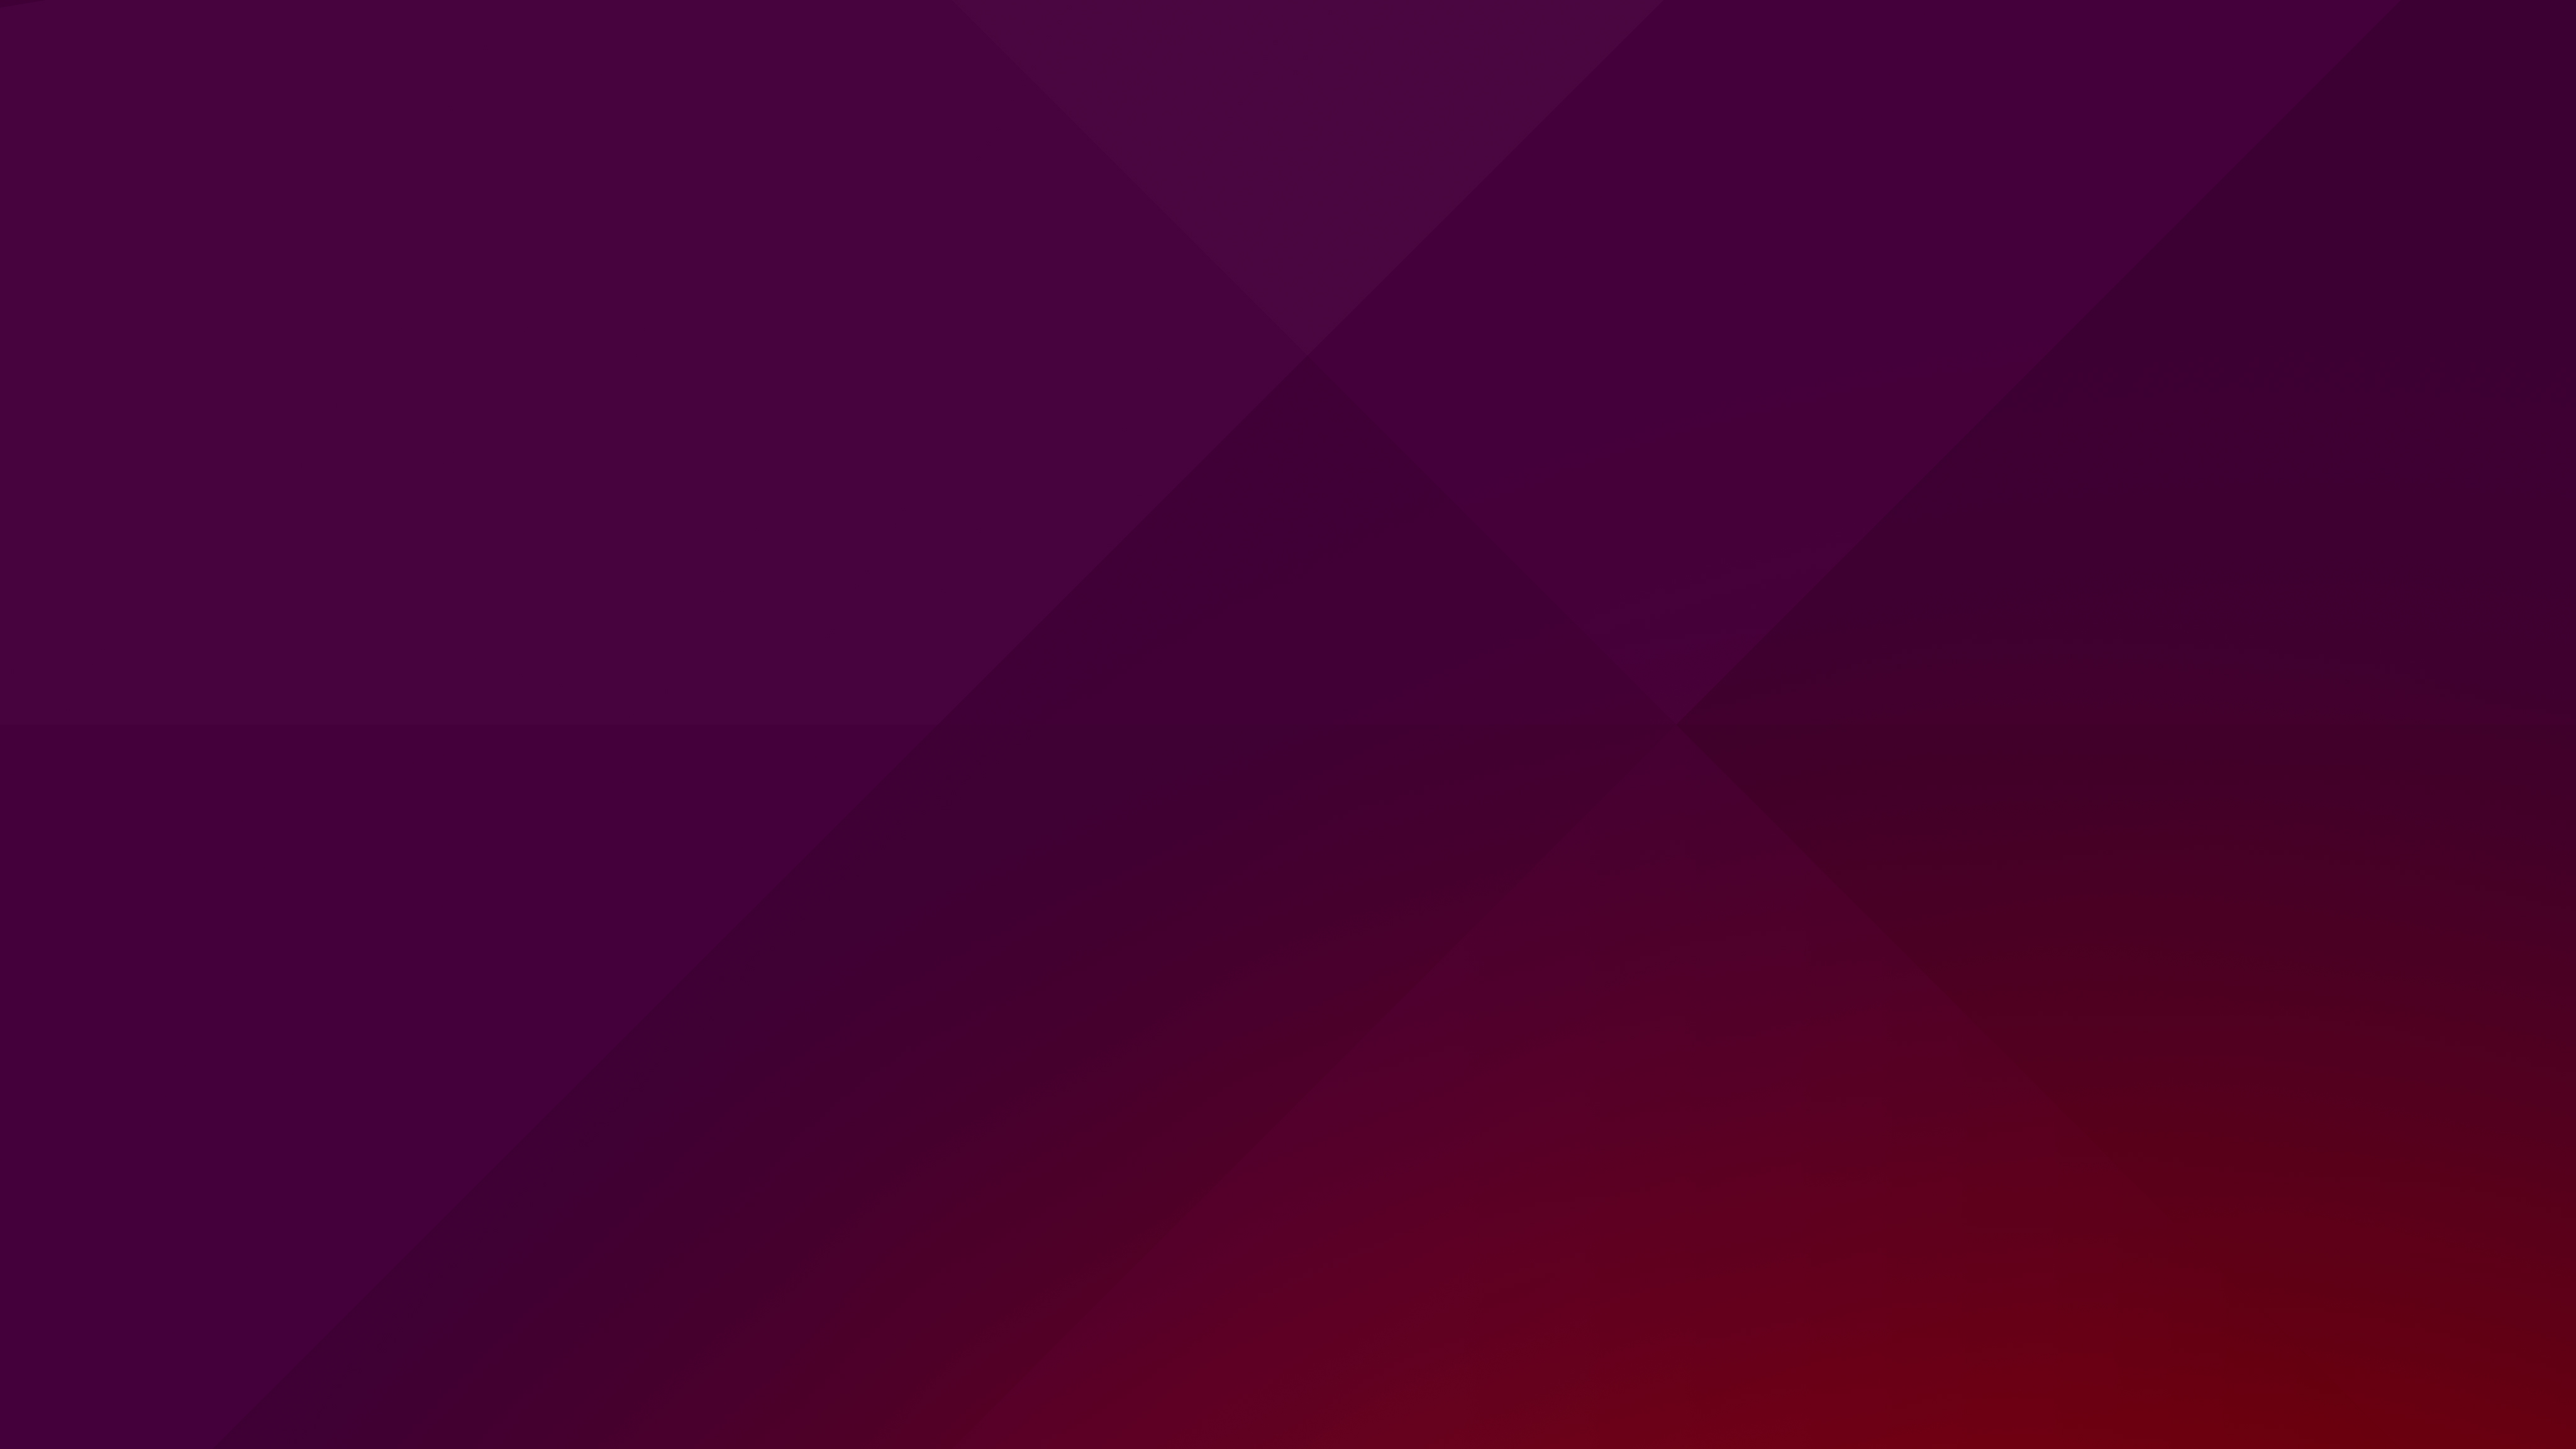 Suru Desktop Wallpaper Ubuntu Vivid